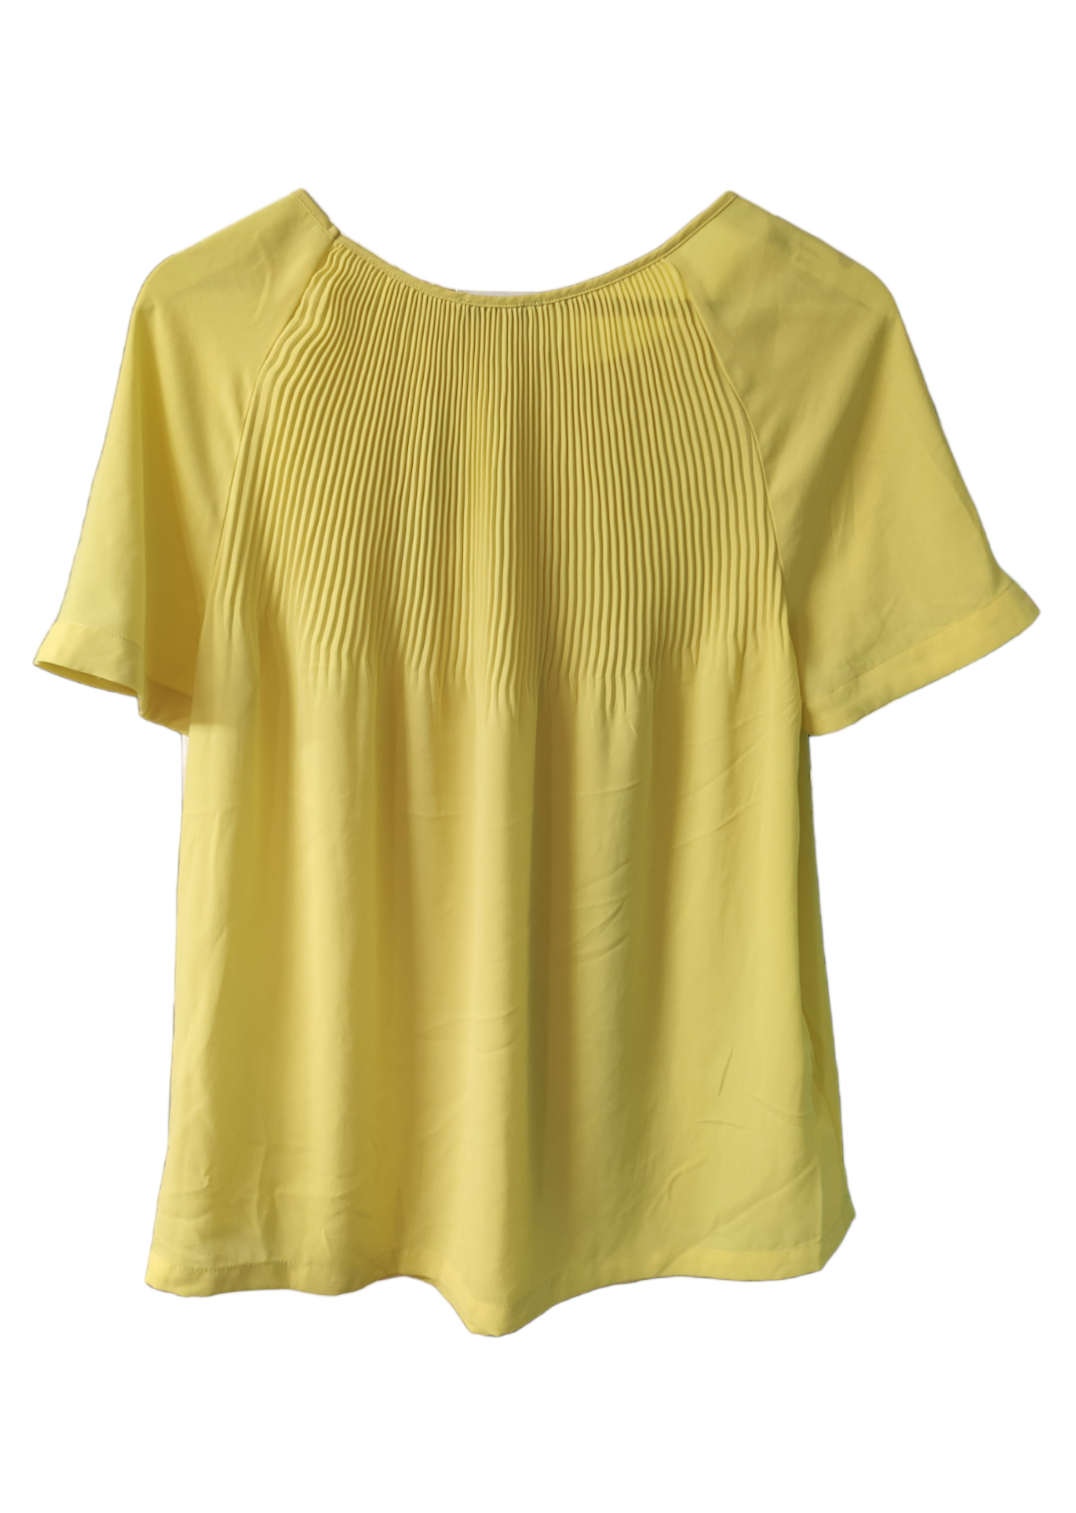 Κοντομάνικη, Γυναικεία Μπλούζα MEXX σε Κίτρινο χρώμα (Medium)